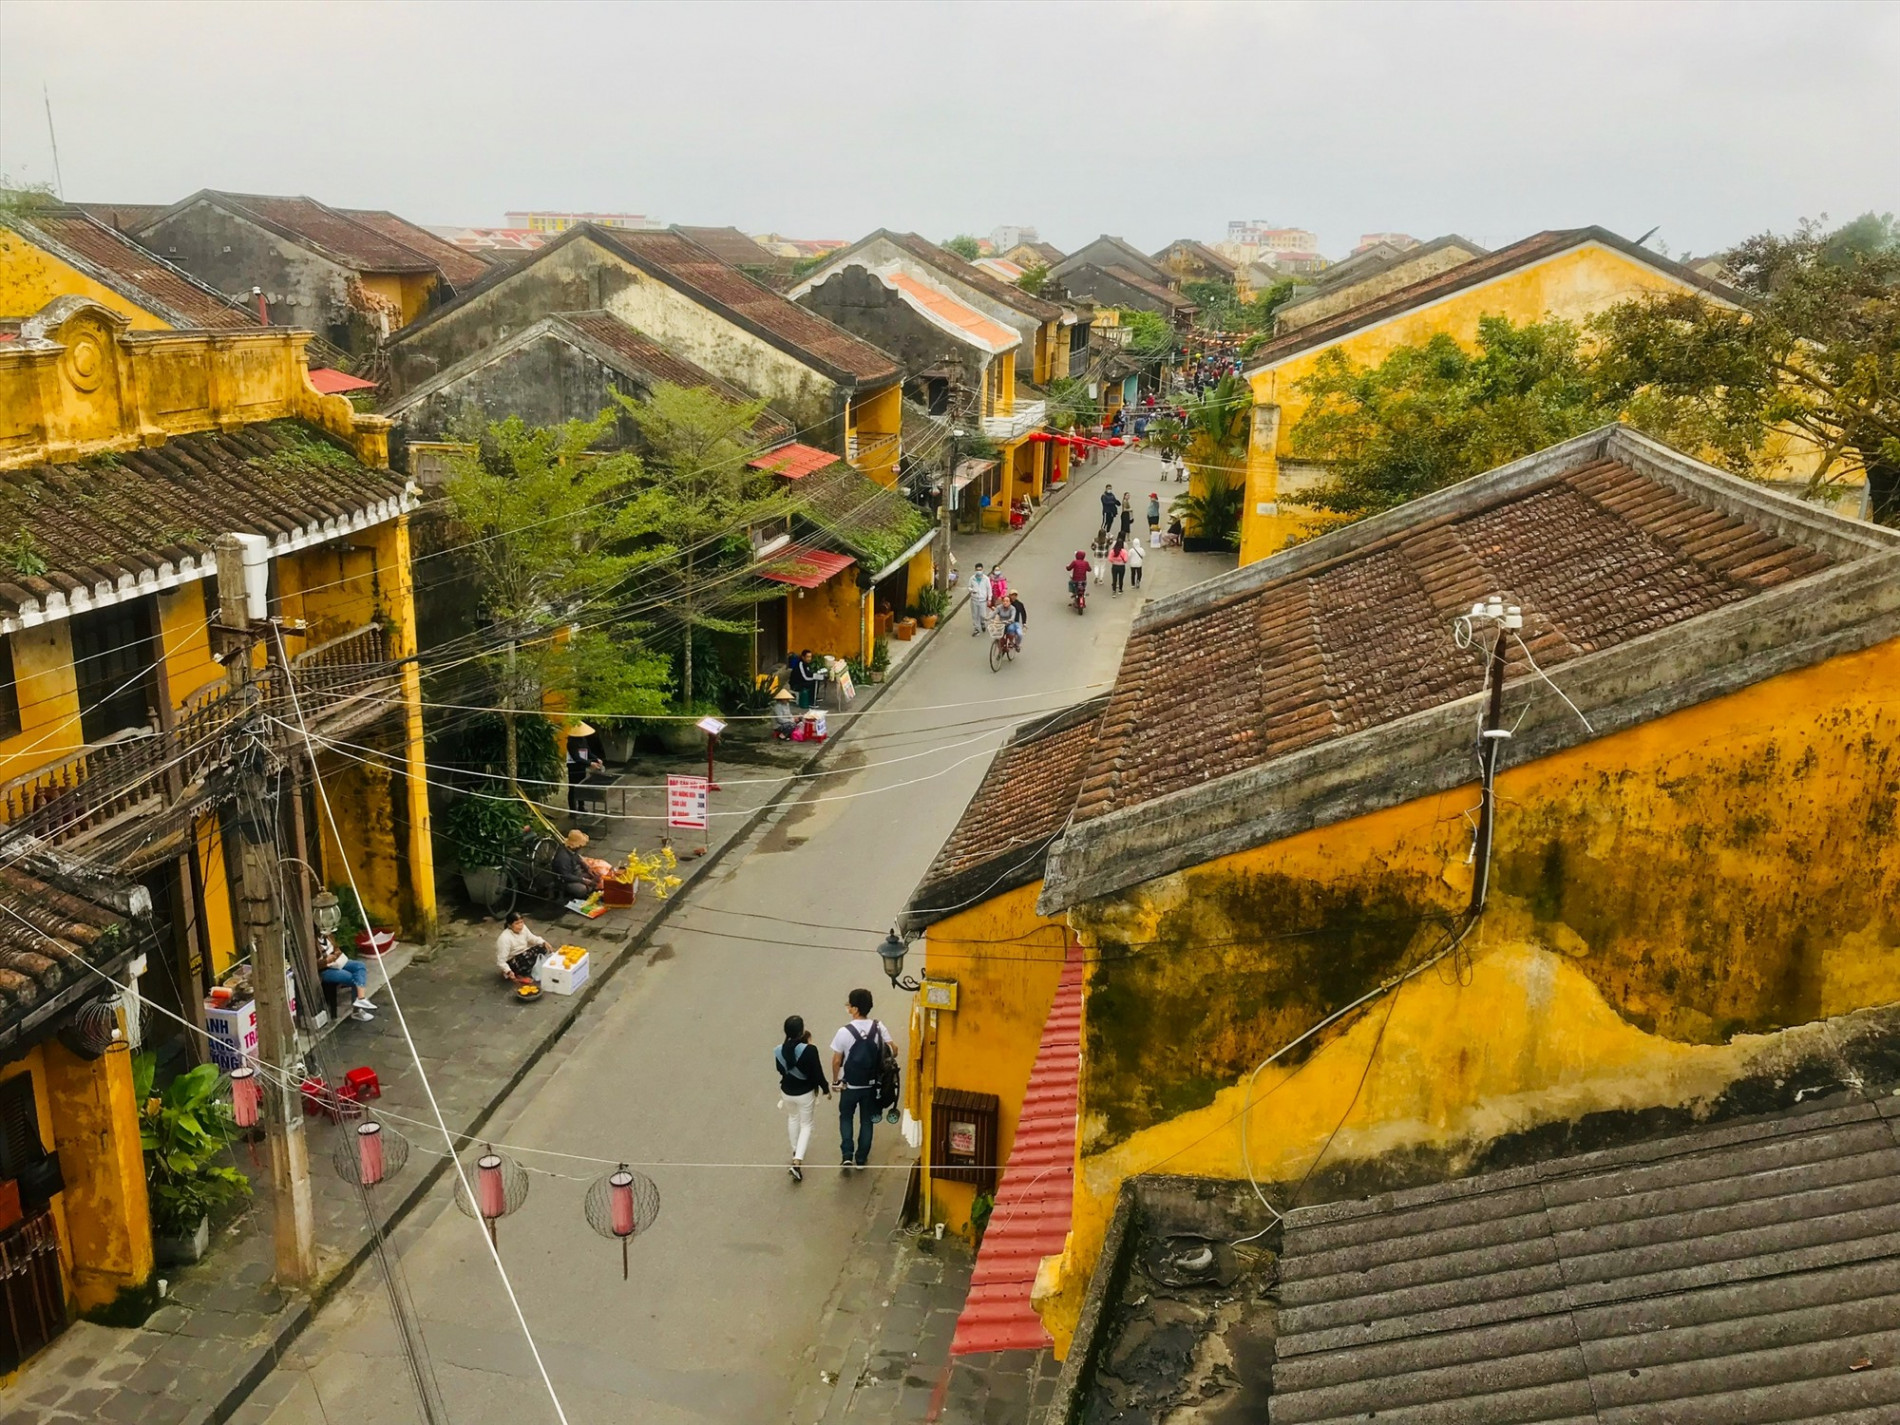 Quản lý kiến trúc nông thôn - Kinh nghiệm từ các quốc gia lân cận - Tạp chí Kiến trúc Việt Nam